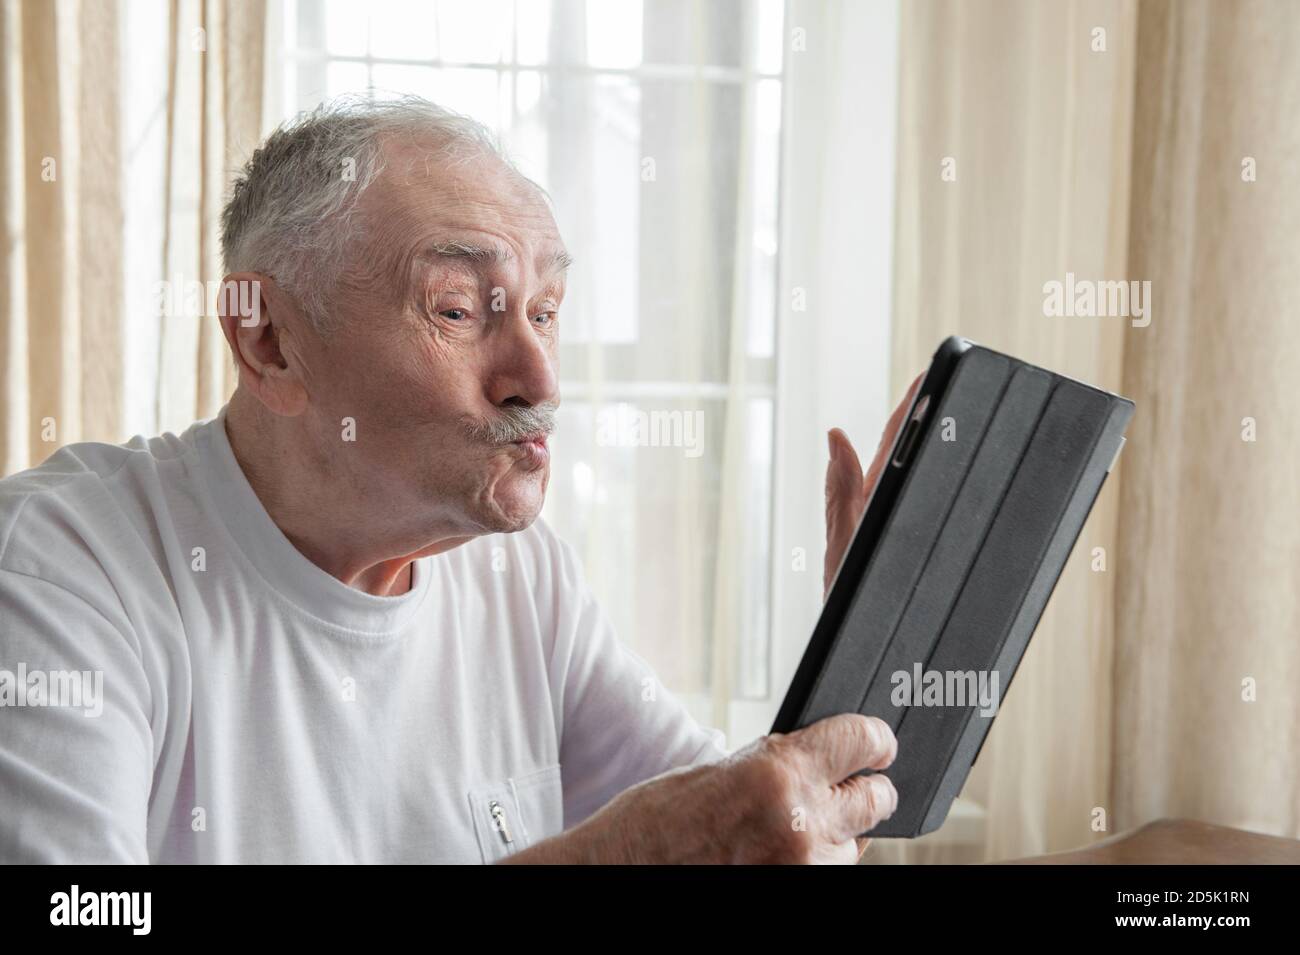 Zärtlich, grauhaarige, gutaussehende Mann in einem weißen T-Shirt bläst einen Kuss, während sie auf den Monitor des Gadgets.Konzepte der Kommunikation und Einsamkeit der Stockfoto